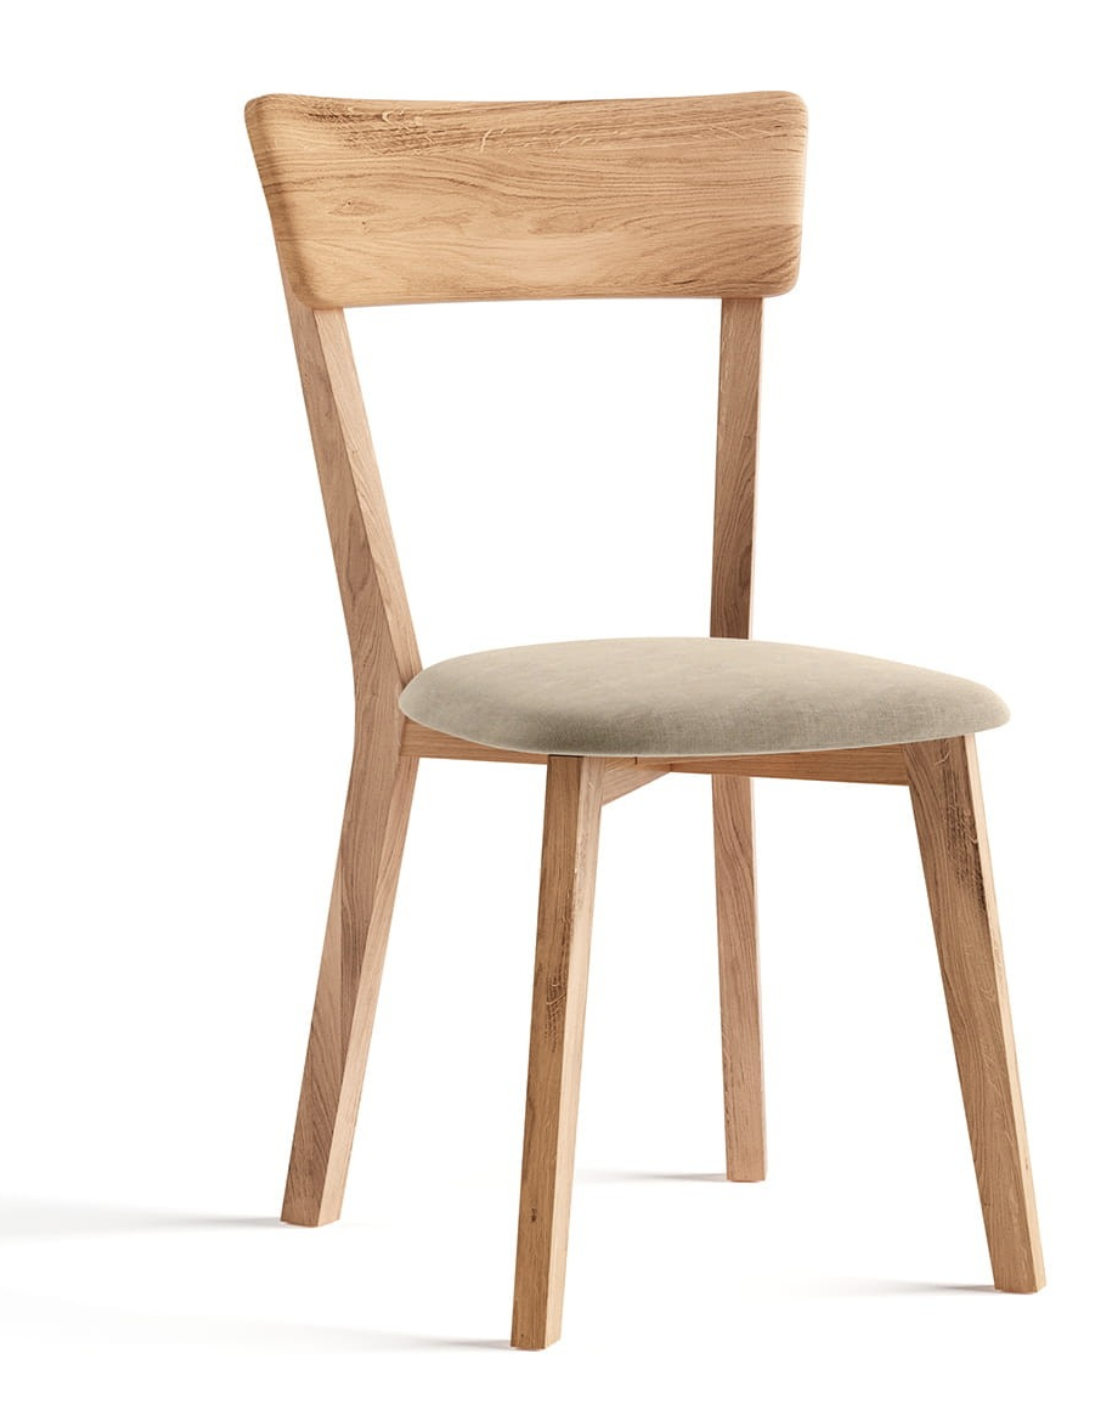 Dubová židle 03-M11, masiv